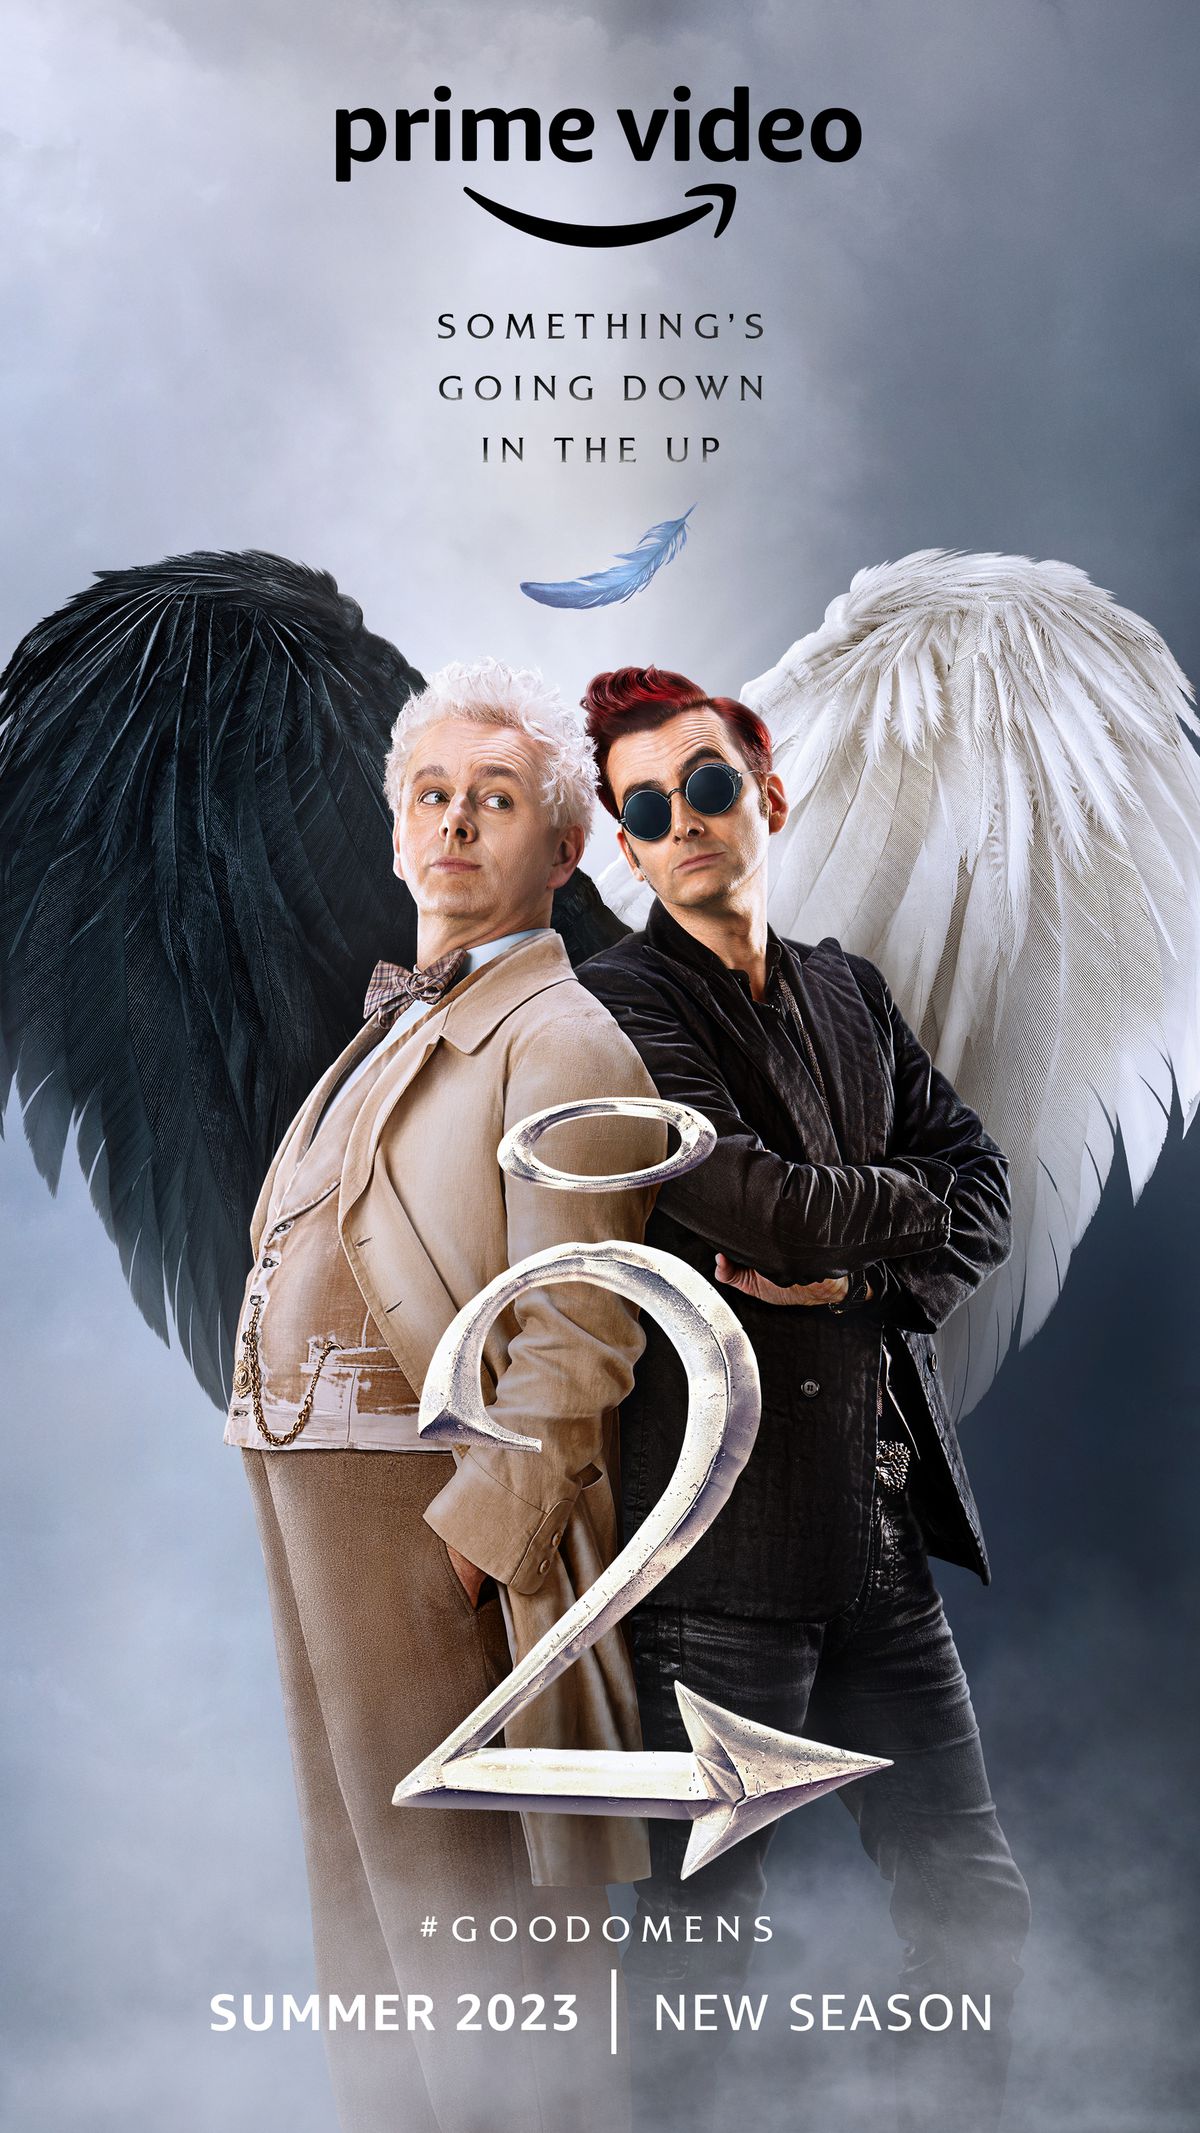 Un poster per la seconda stagione di Good Omens, con Michael Sheen nei panni di Aziraphale e David Tennant nei panni di Crowley, in piedi schiena contro schiena con le ali che formano un cuore. 